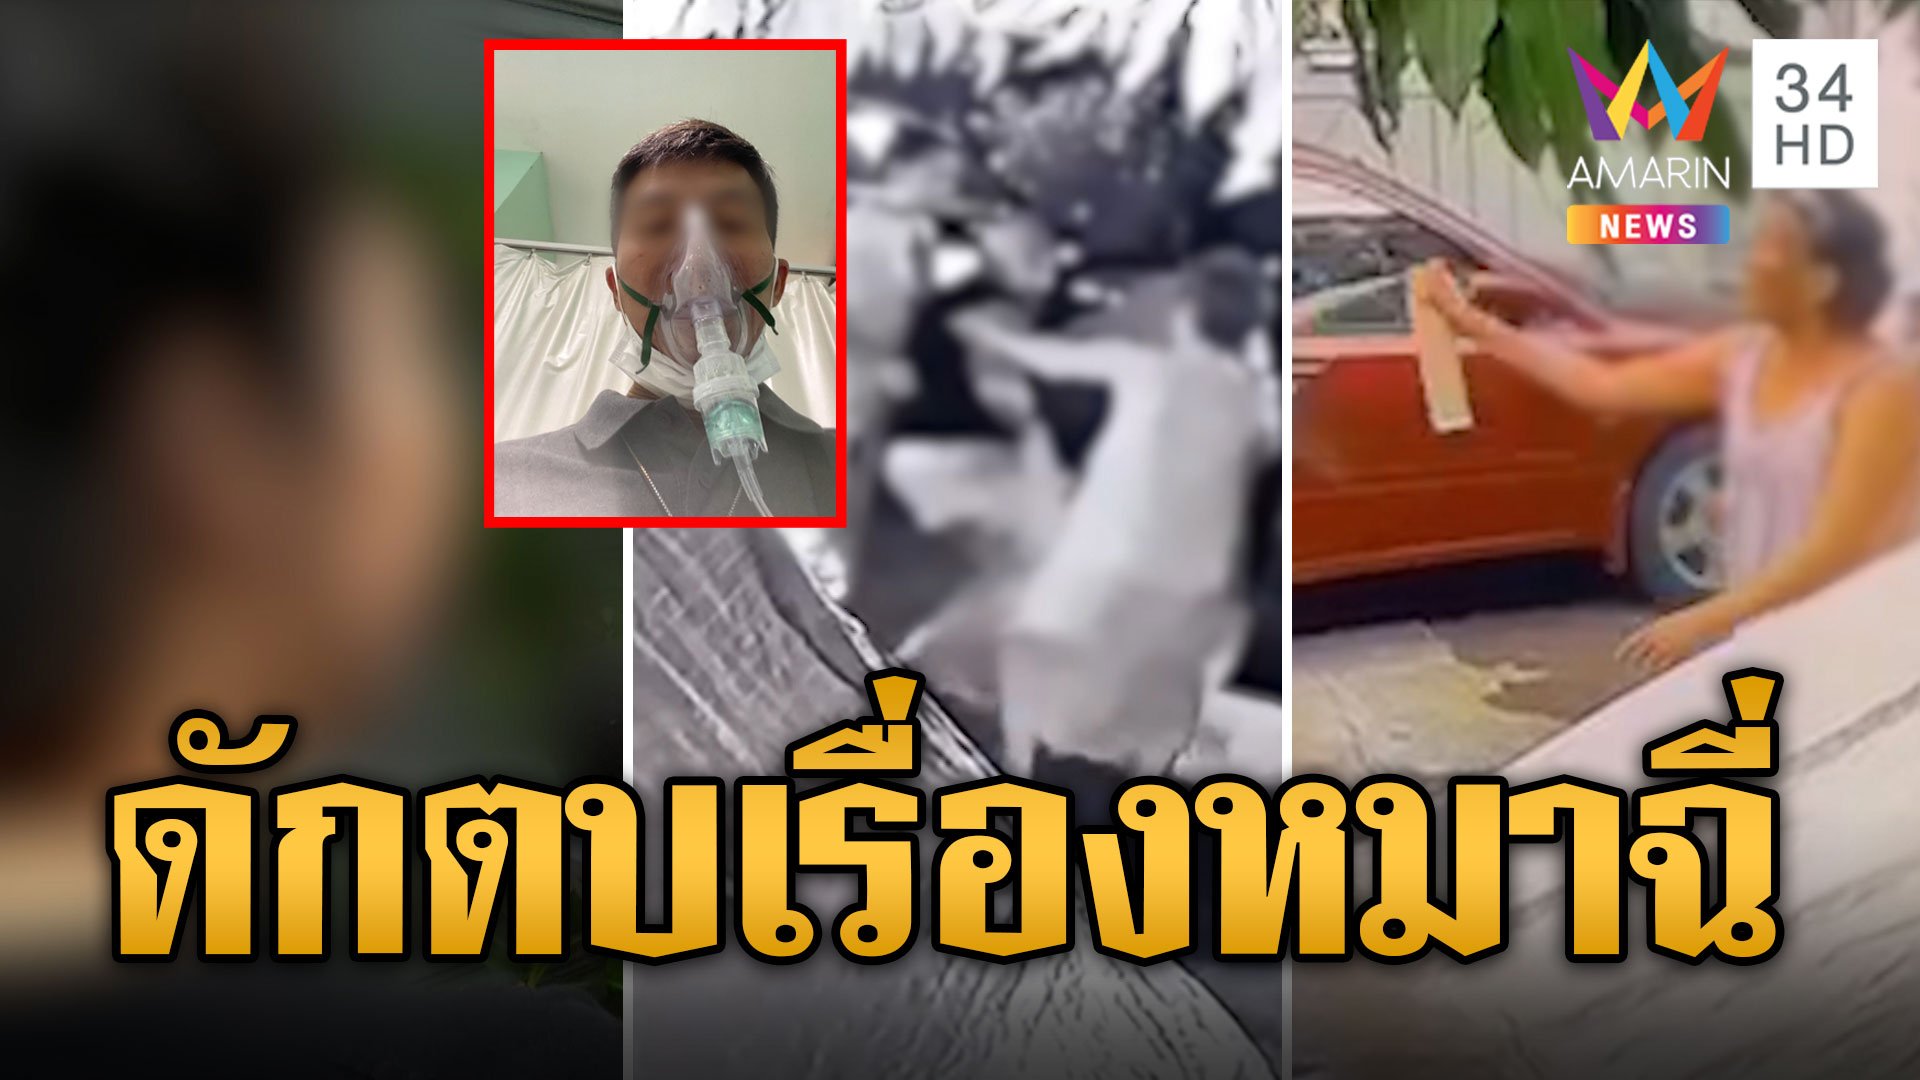 เรื่องหมาฉี่! สาวแค้นเพื่อนบ้านฉีดยาฆ่าแมลงใส่หน้าพ่อ ดักตบชุลมุน | ข่าวอรุณอมรินทร์ | 4 ธ.ค. 66 | AMARIN TVHD34